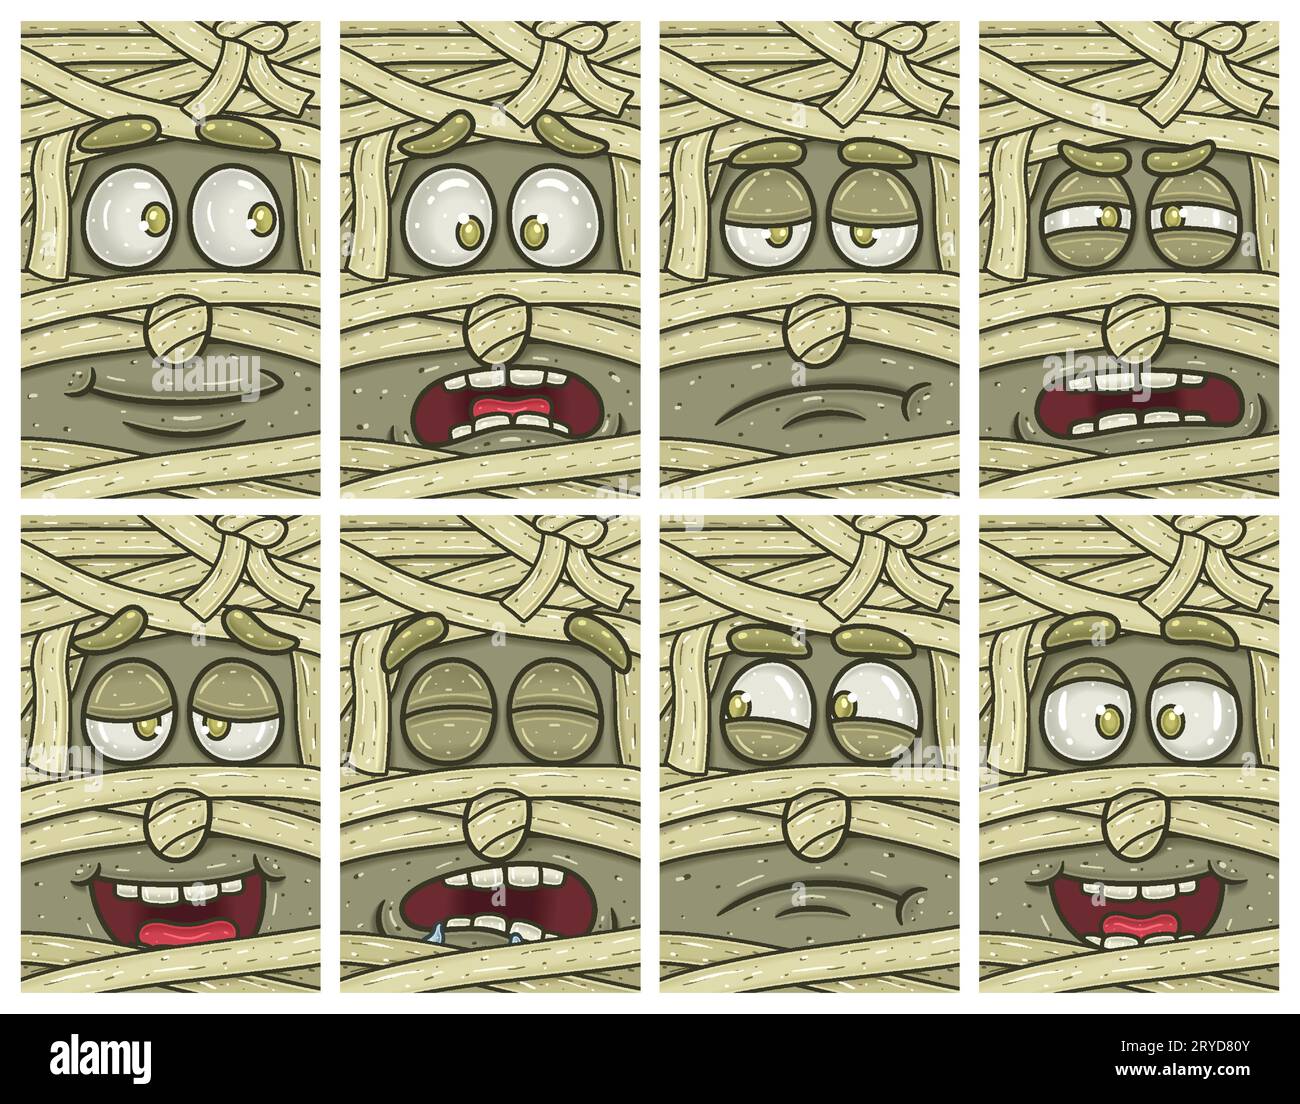 Zeichentrickset Für Mummy Face Expression. Tapeten-, Cover-, Etiketten- und Verpackungsdesign. Vektorillustration Stock Vektor